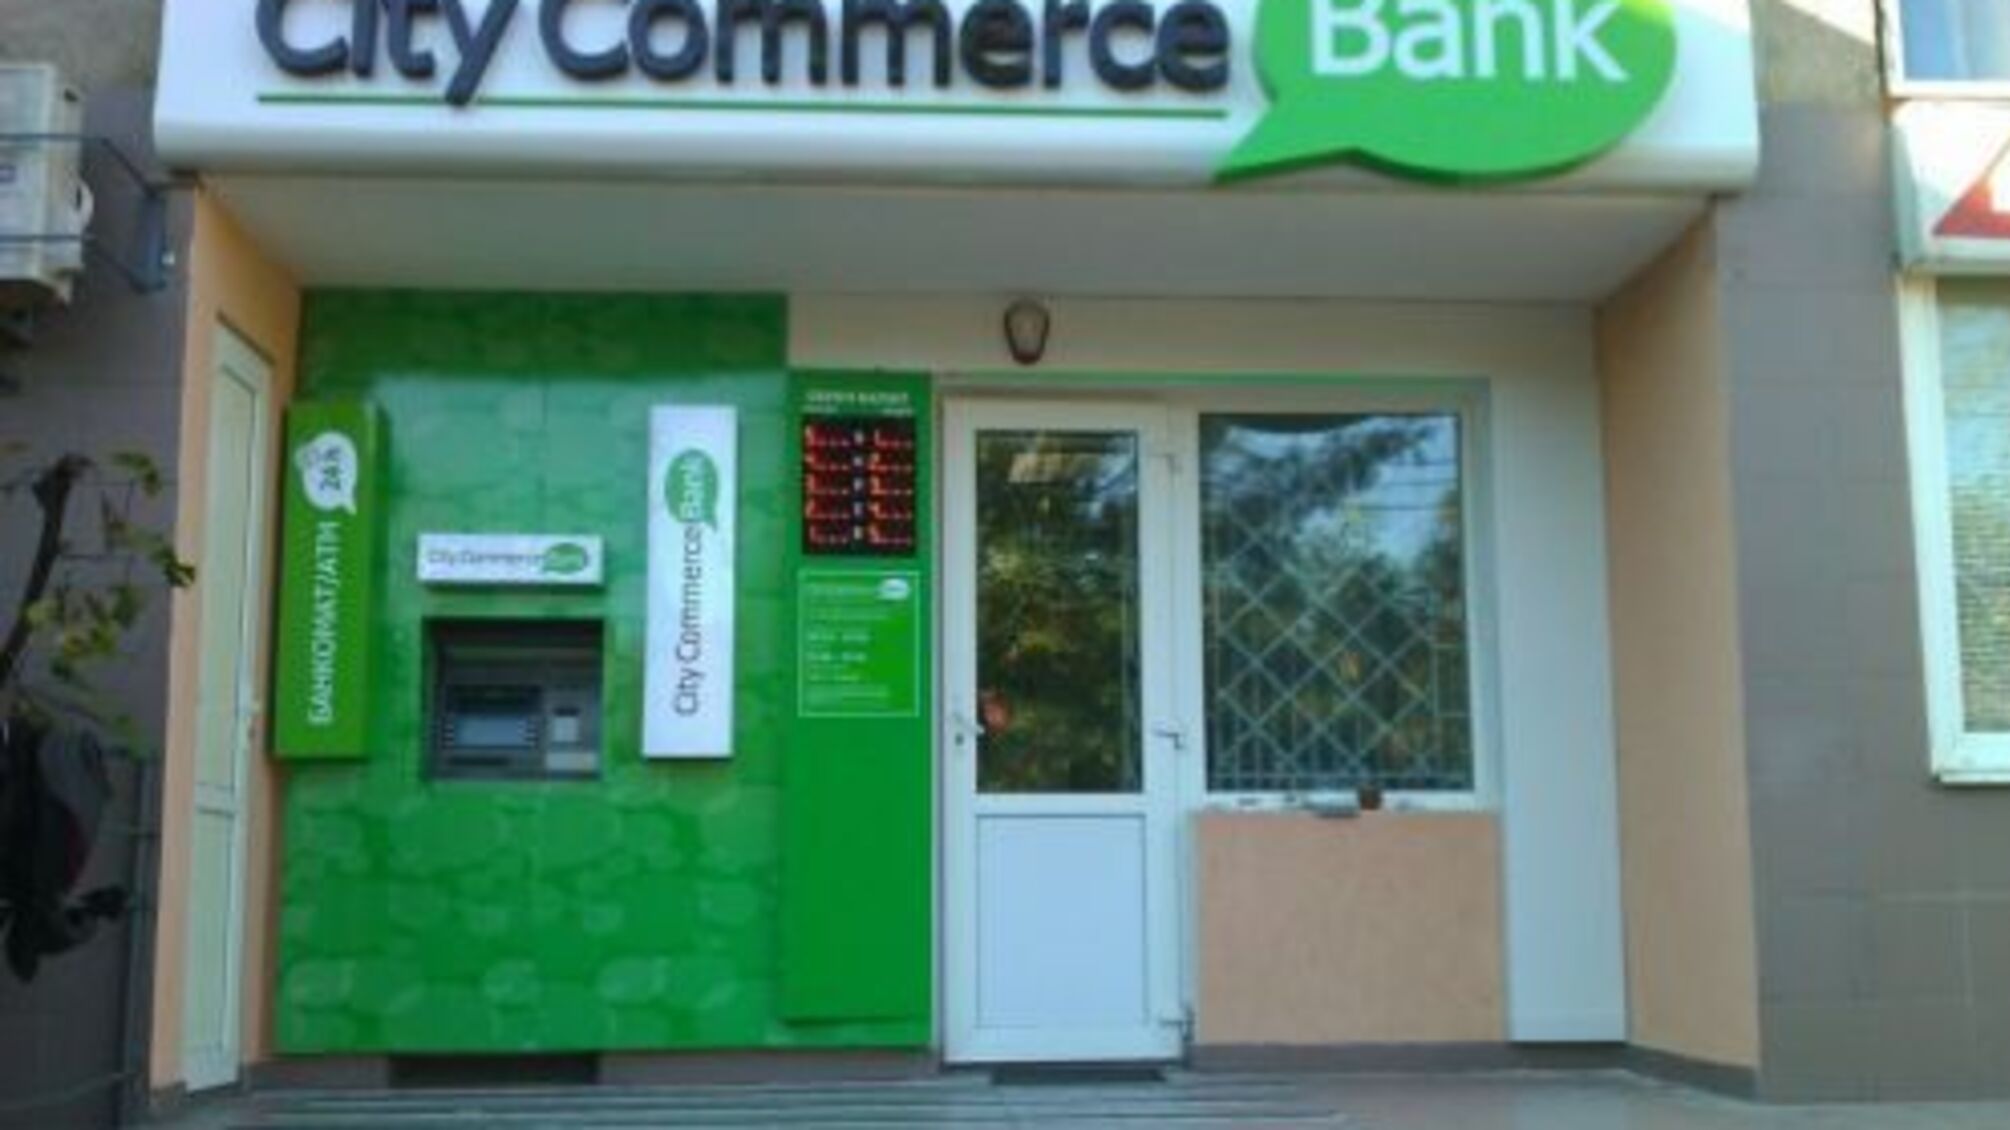 Керівництво CityCommerce Bank підозрюють у розтраті 80 млн грн